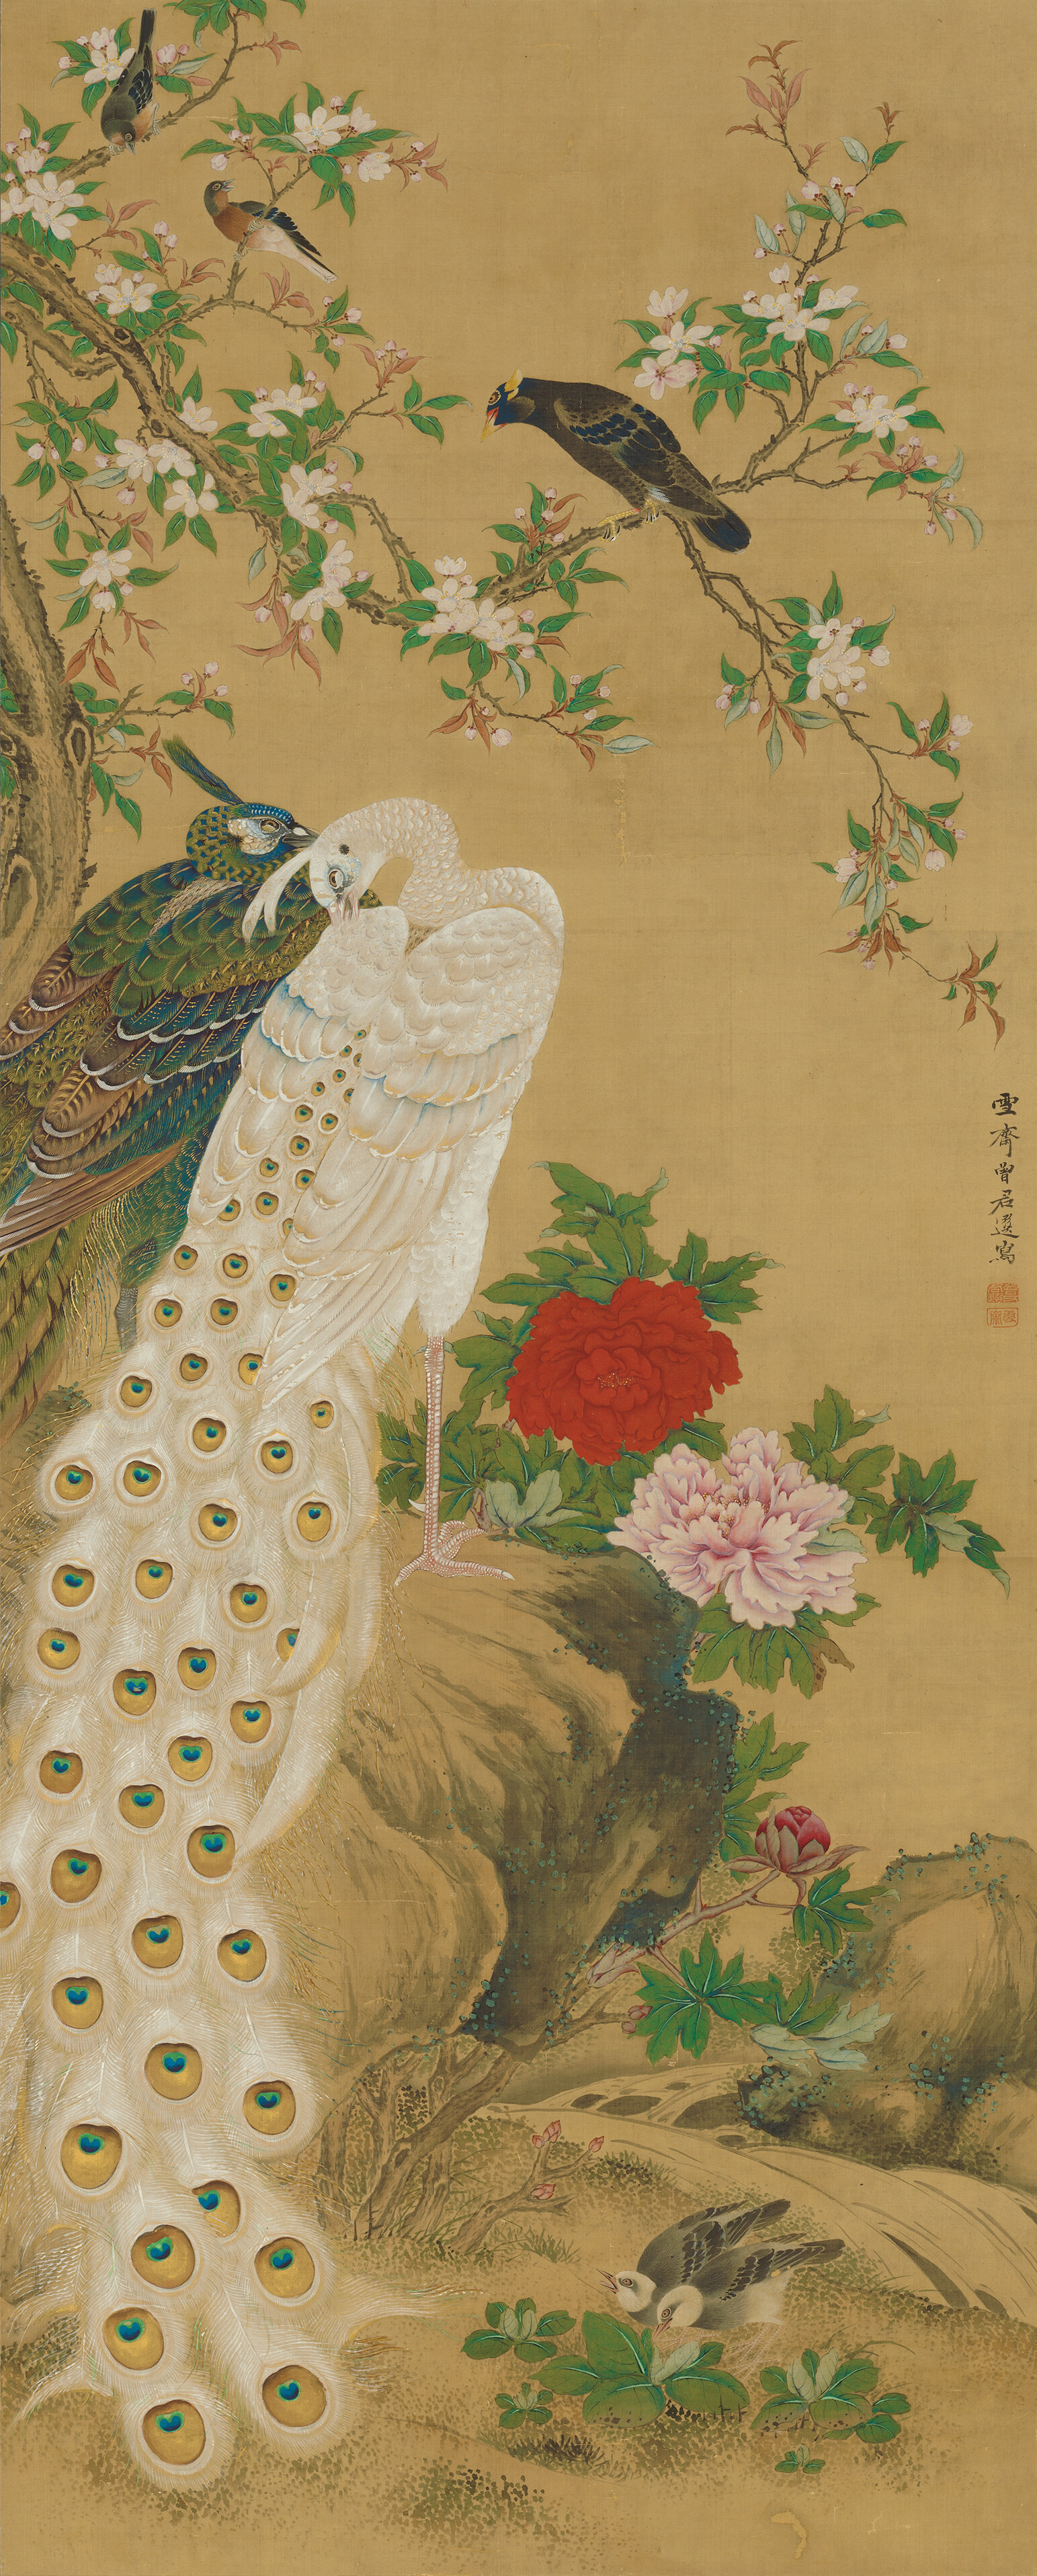 増山雪斎 《孔雀図》（左幅） 江戸時代、享和元年（1801）